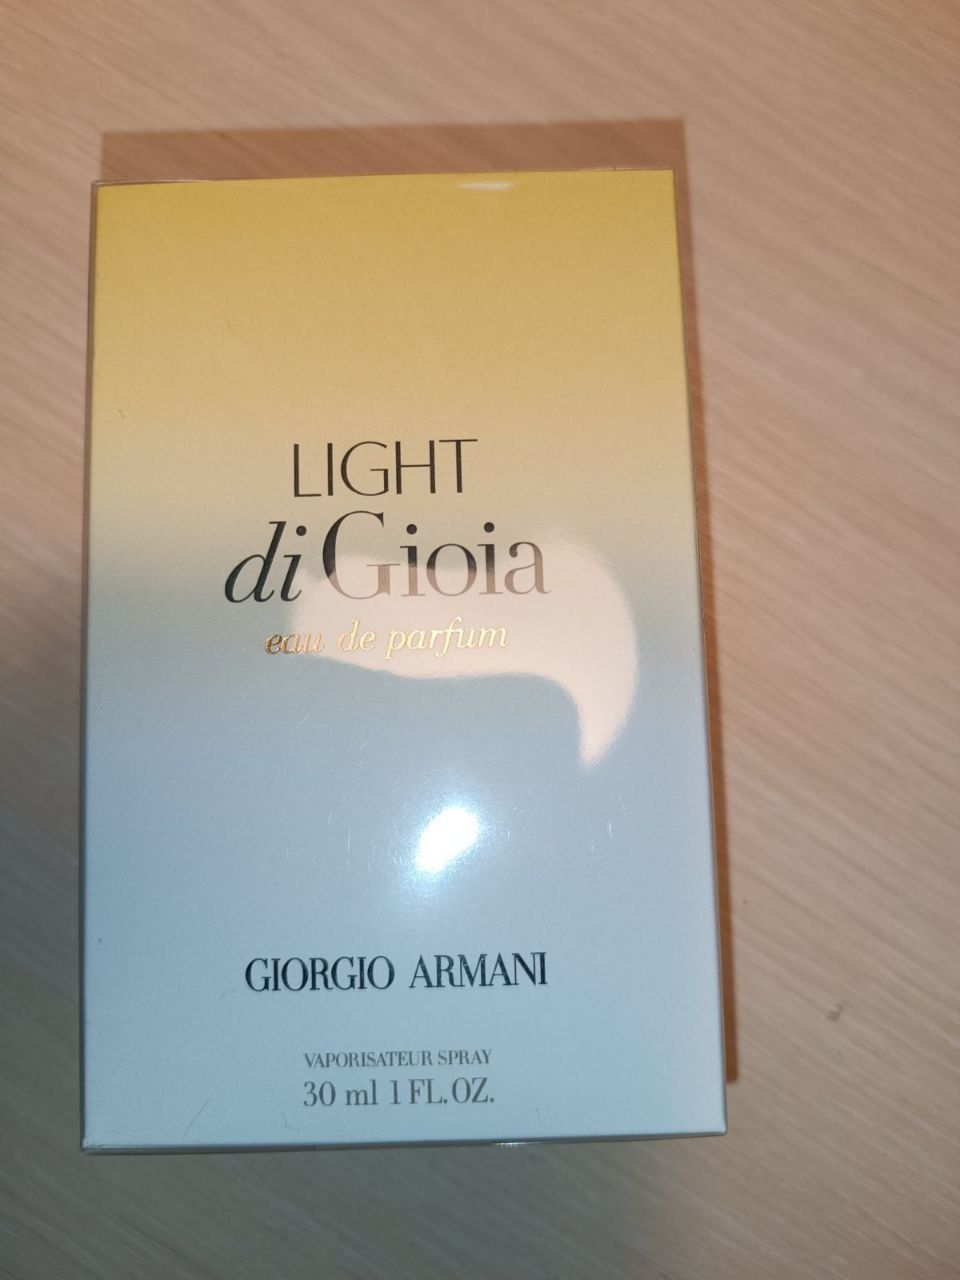 Giorgio Armani Light di Gioia.

ПарфумовGiorgio Armani Light di Gioia.